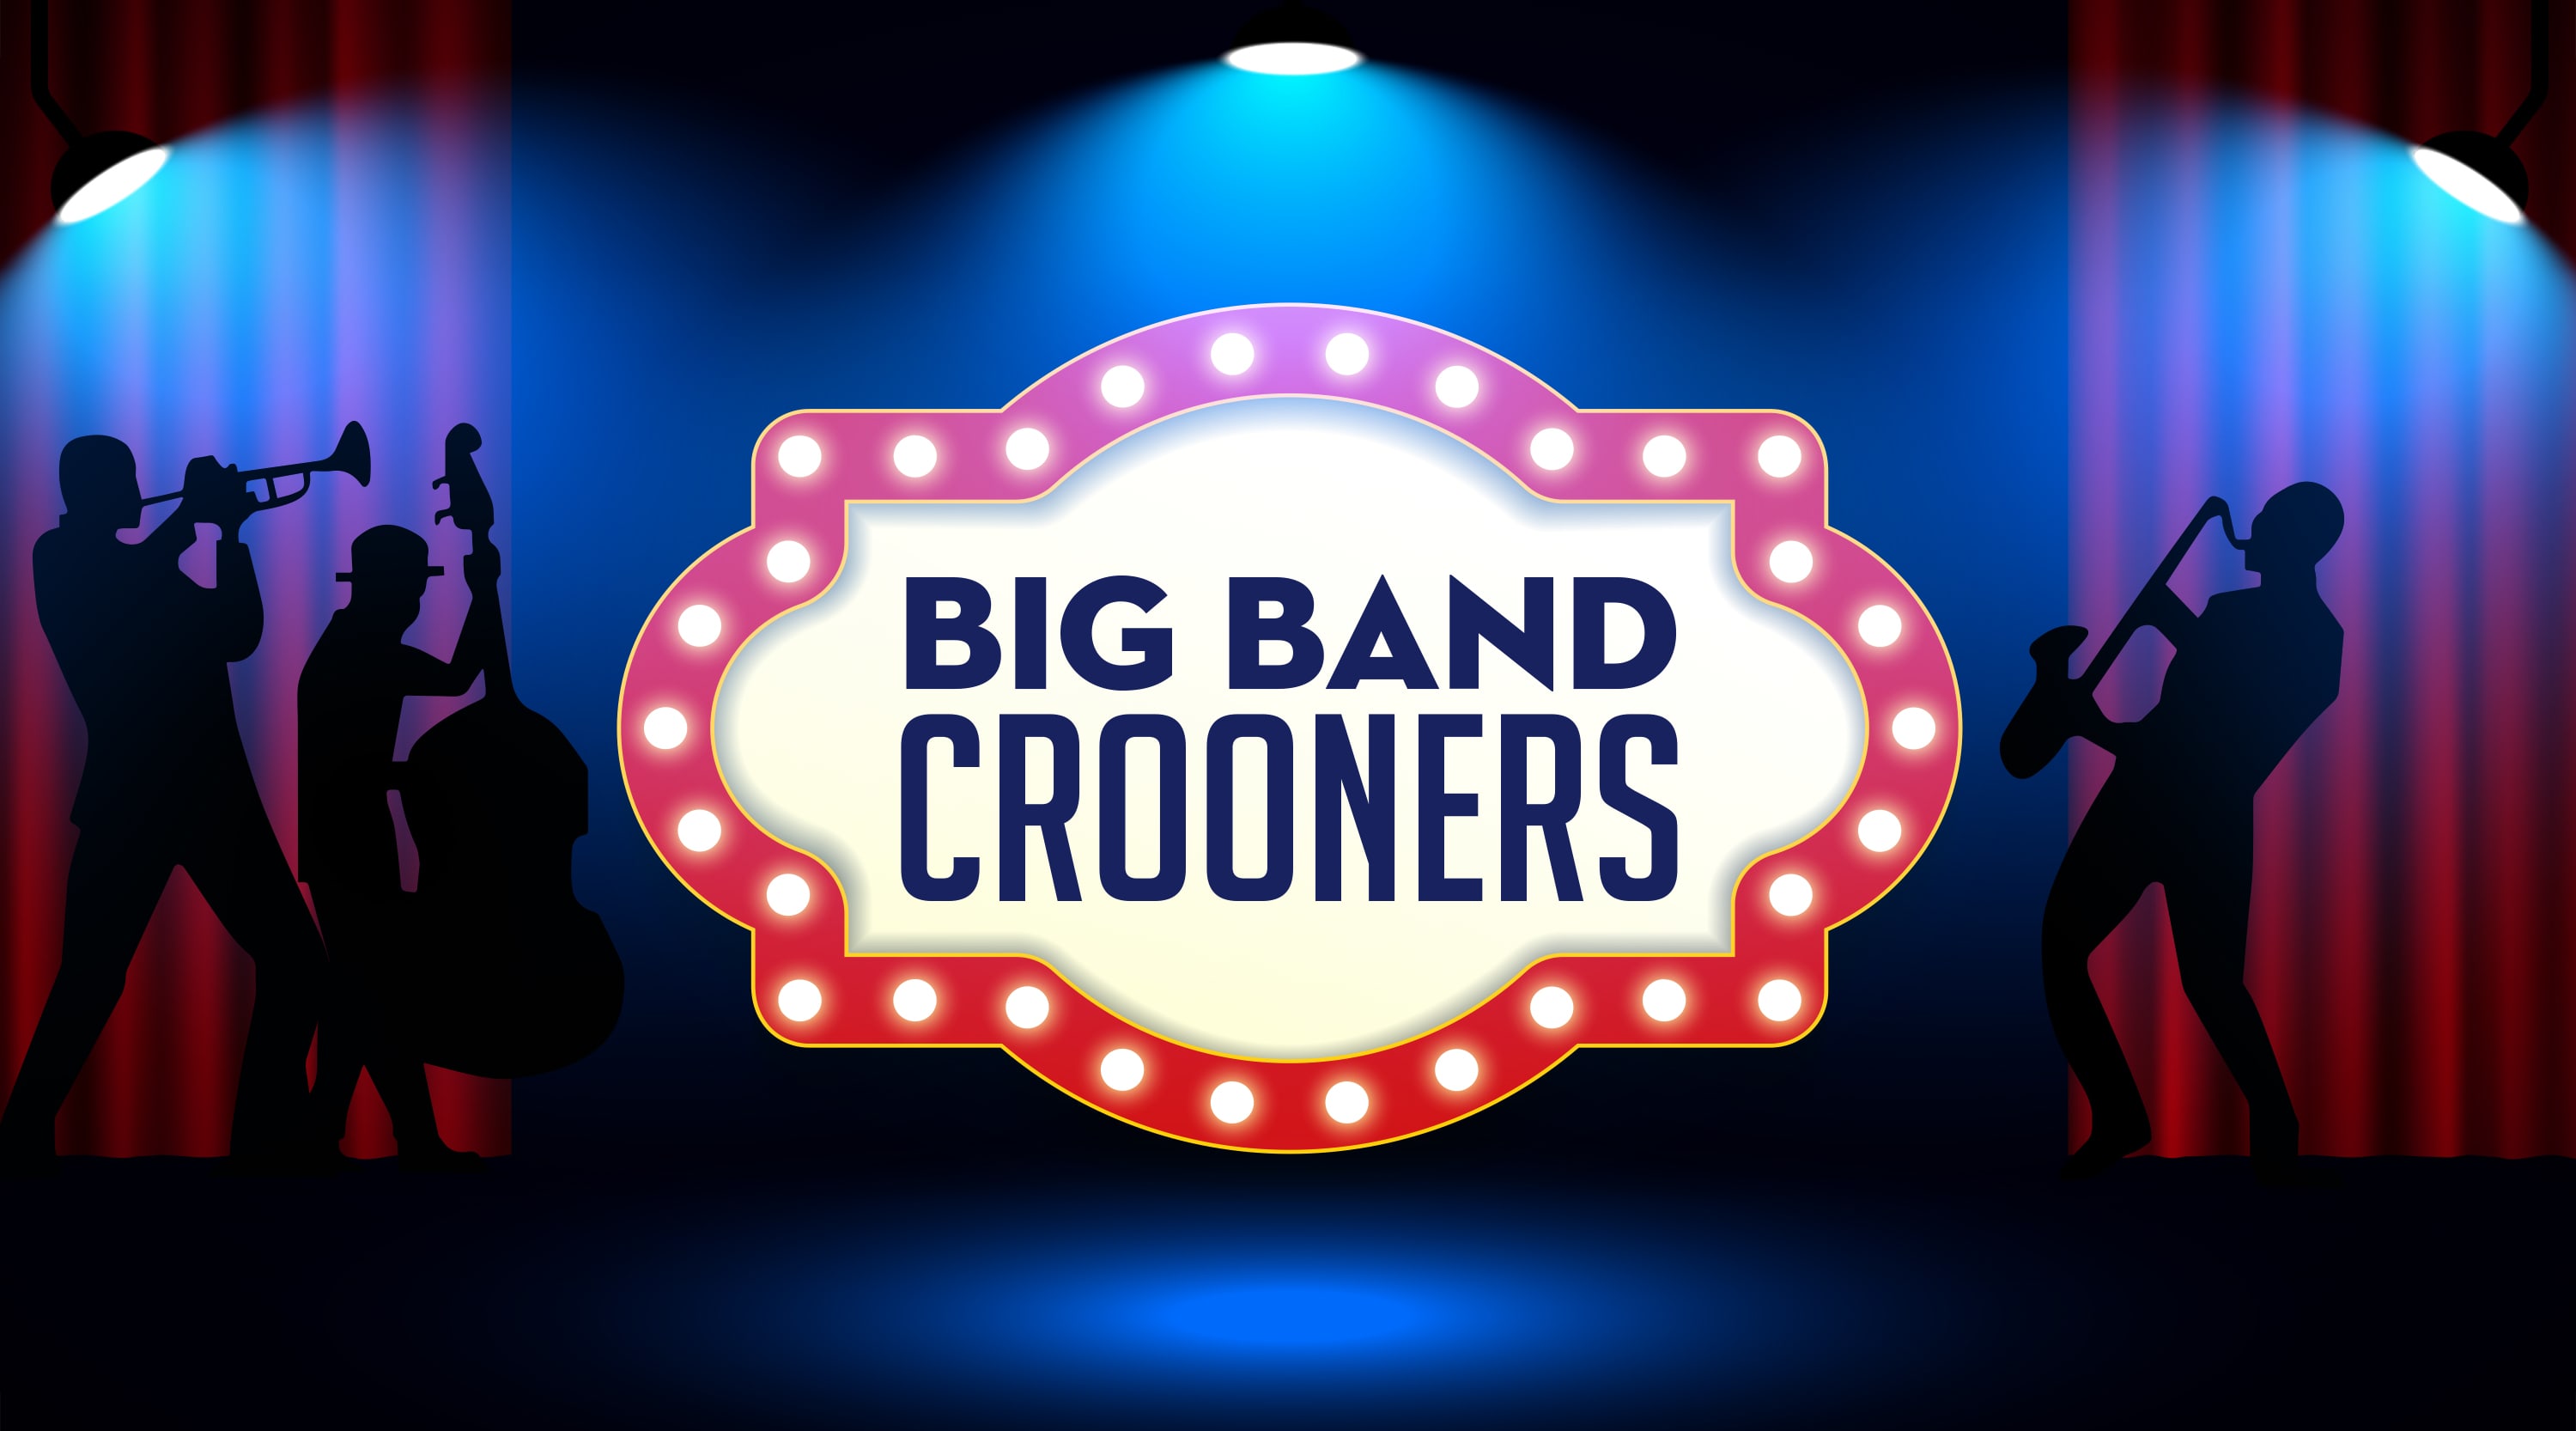 Big Band Crooners